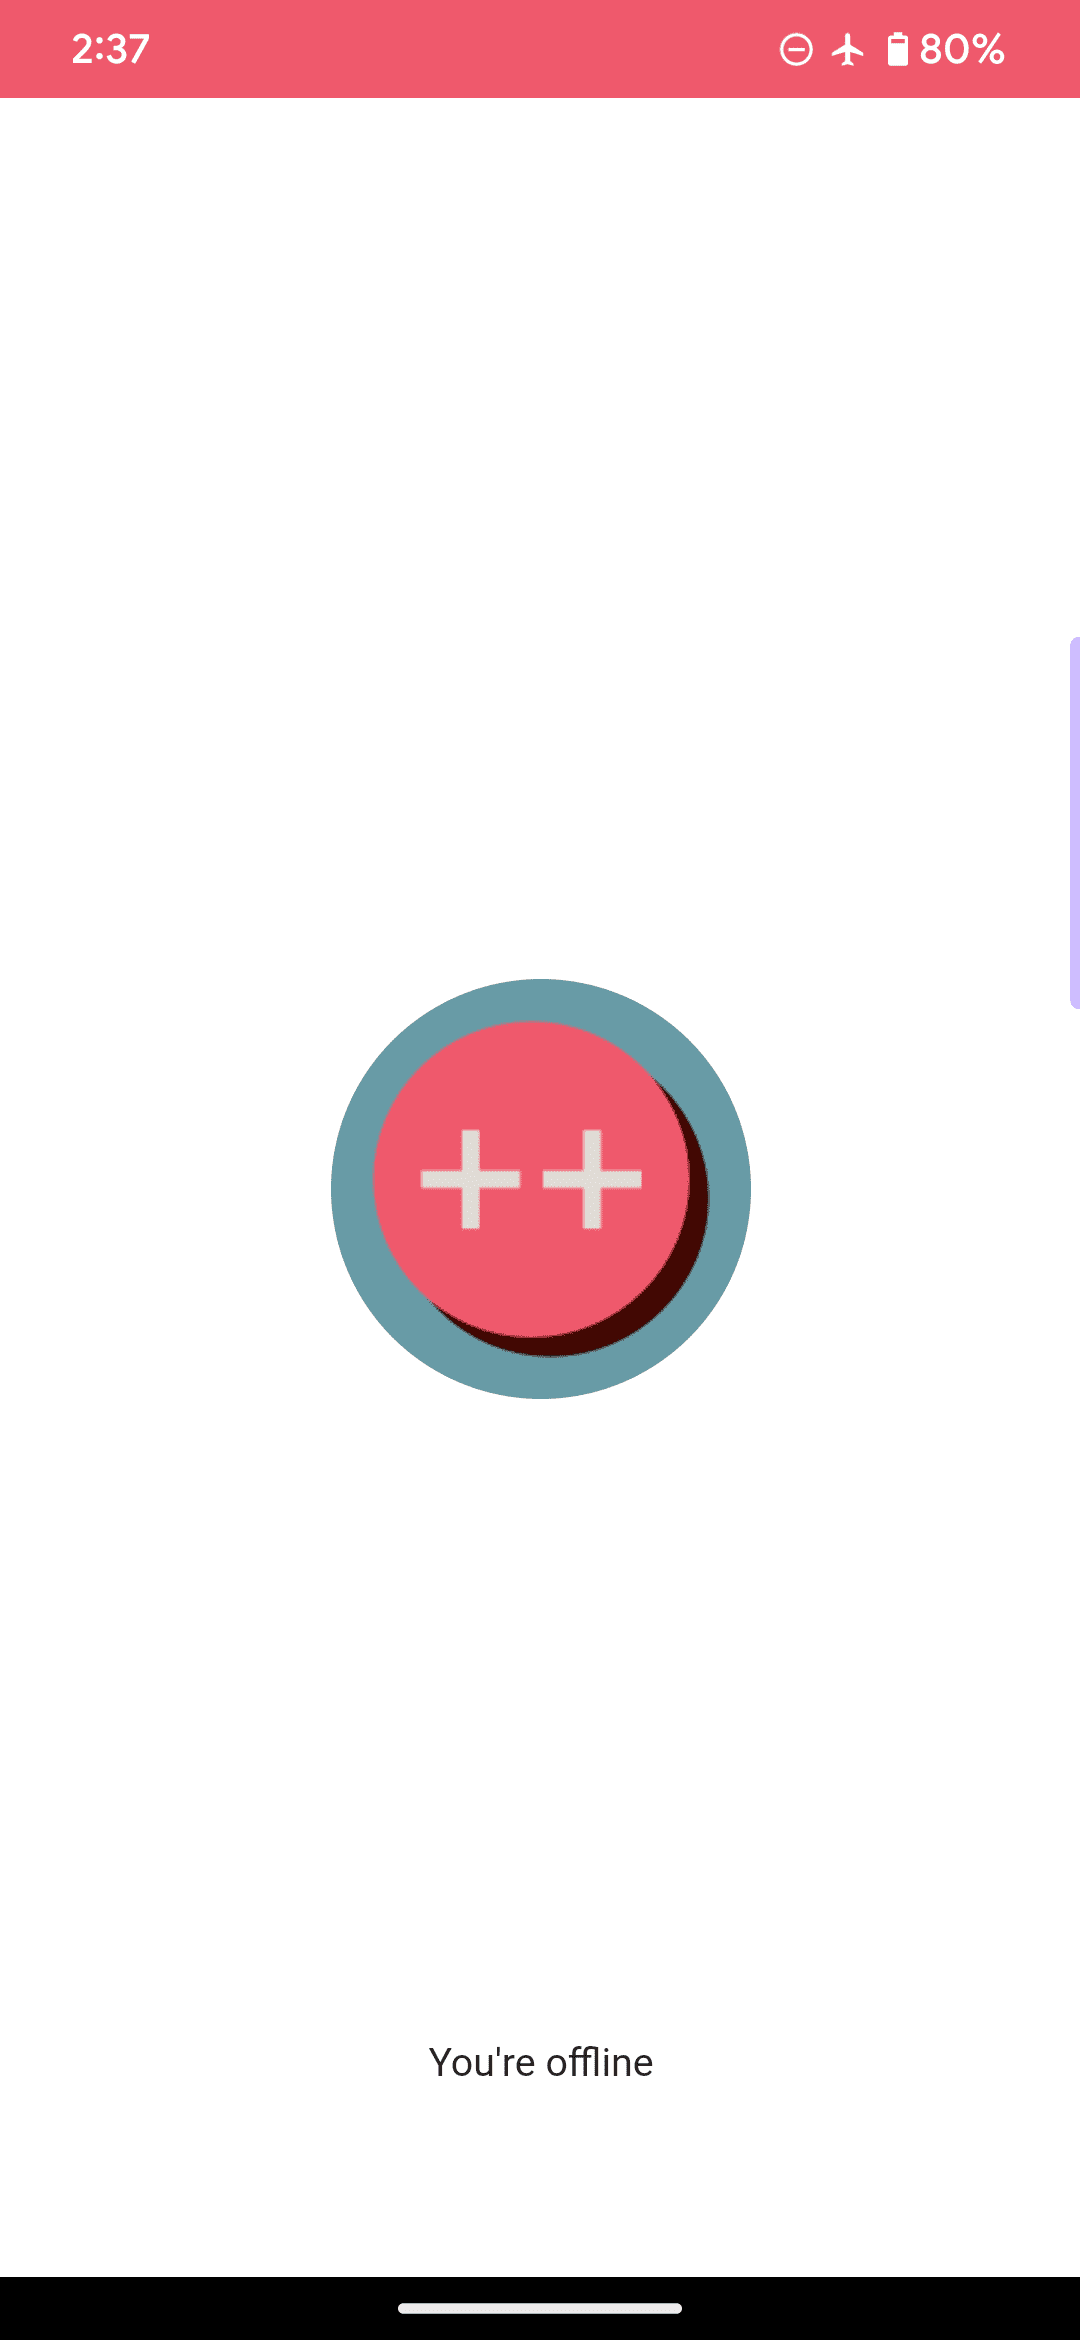 로고가 분홍색 원과 2개의 더하기 기호로 구성되어 있으며 &#39;오프라인 상태입니다&#39;라는 메시지가 포함된 웹 앱 예시의 기본 오프라인 페이지